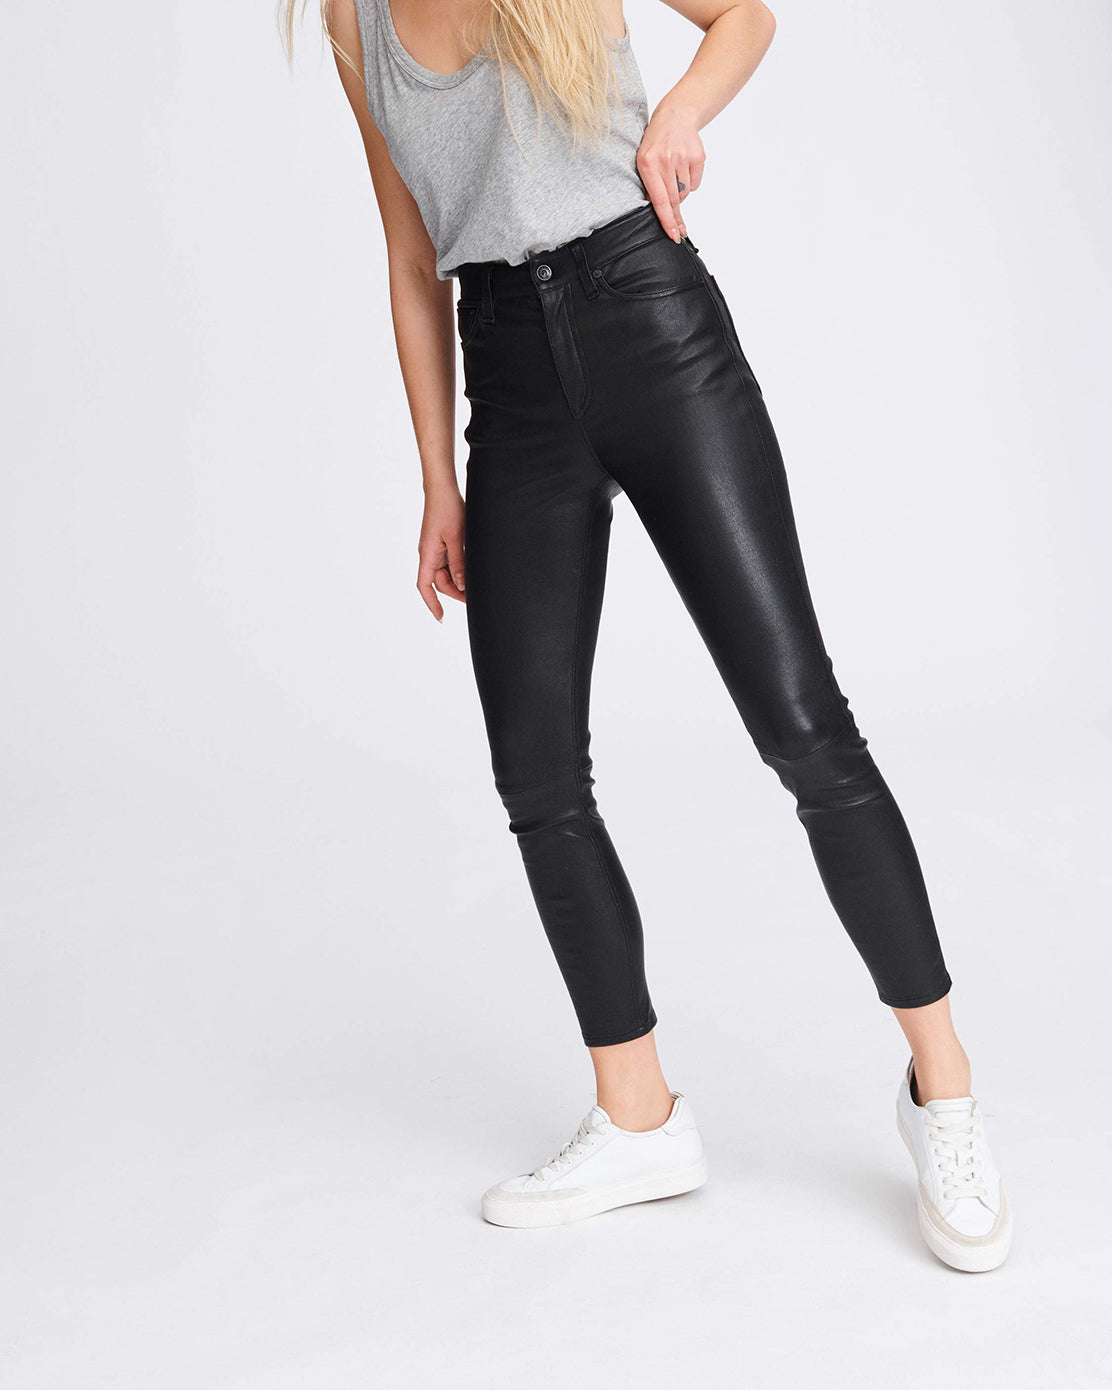 rag & bone Women's Nina High Rise Skinny Coated Jeans, Coated Black, 27 at   Women's Jeans store